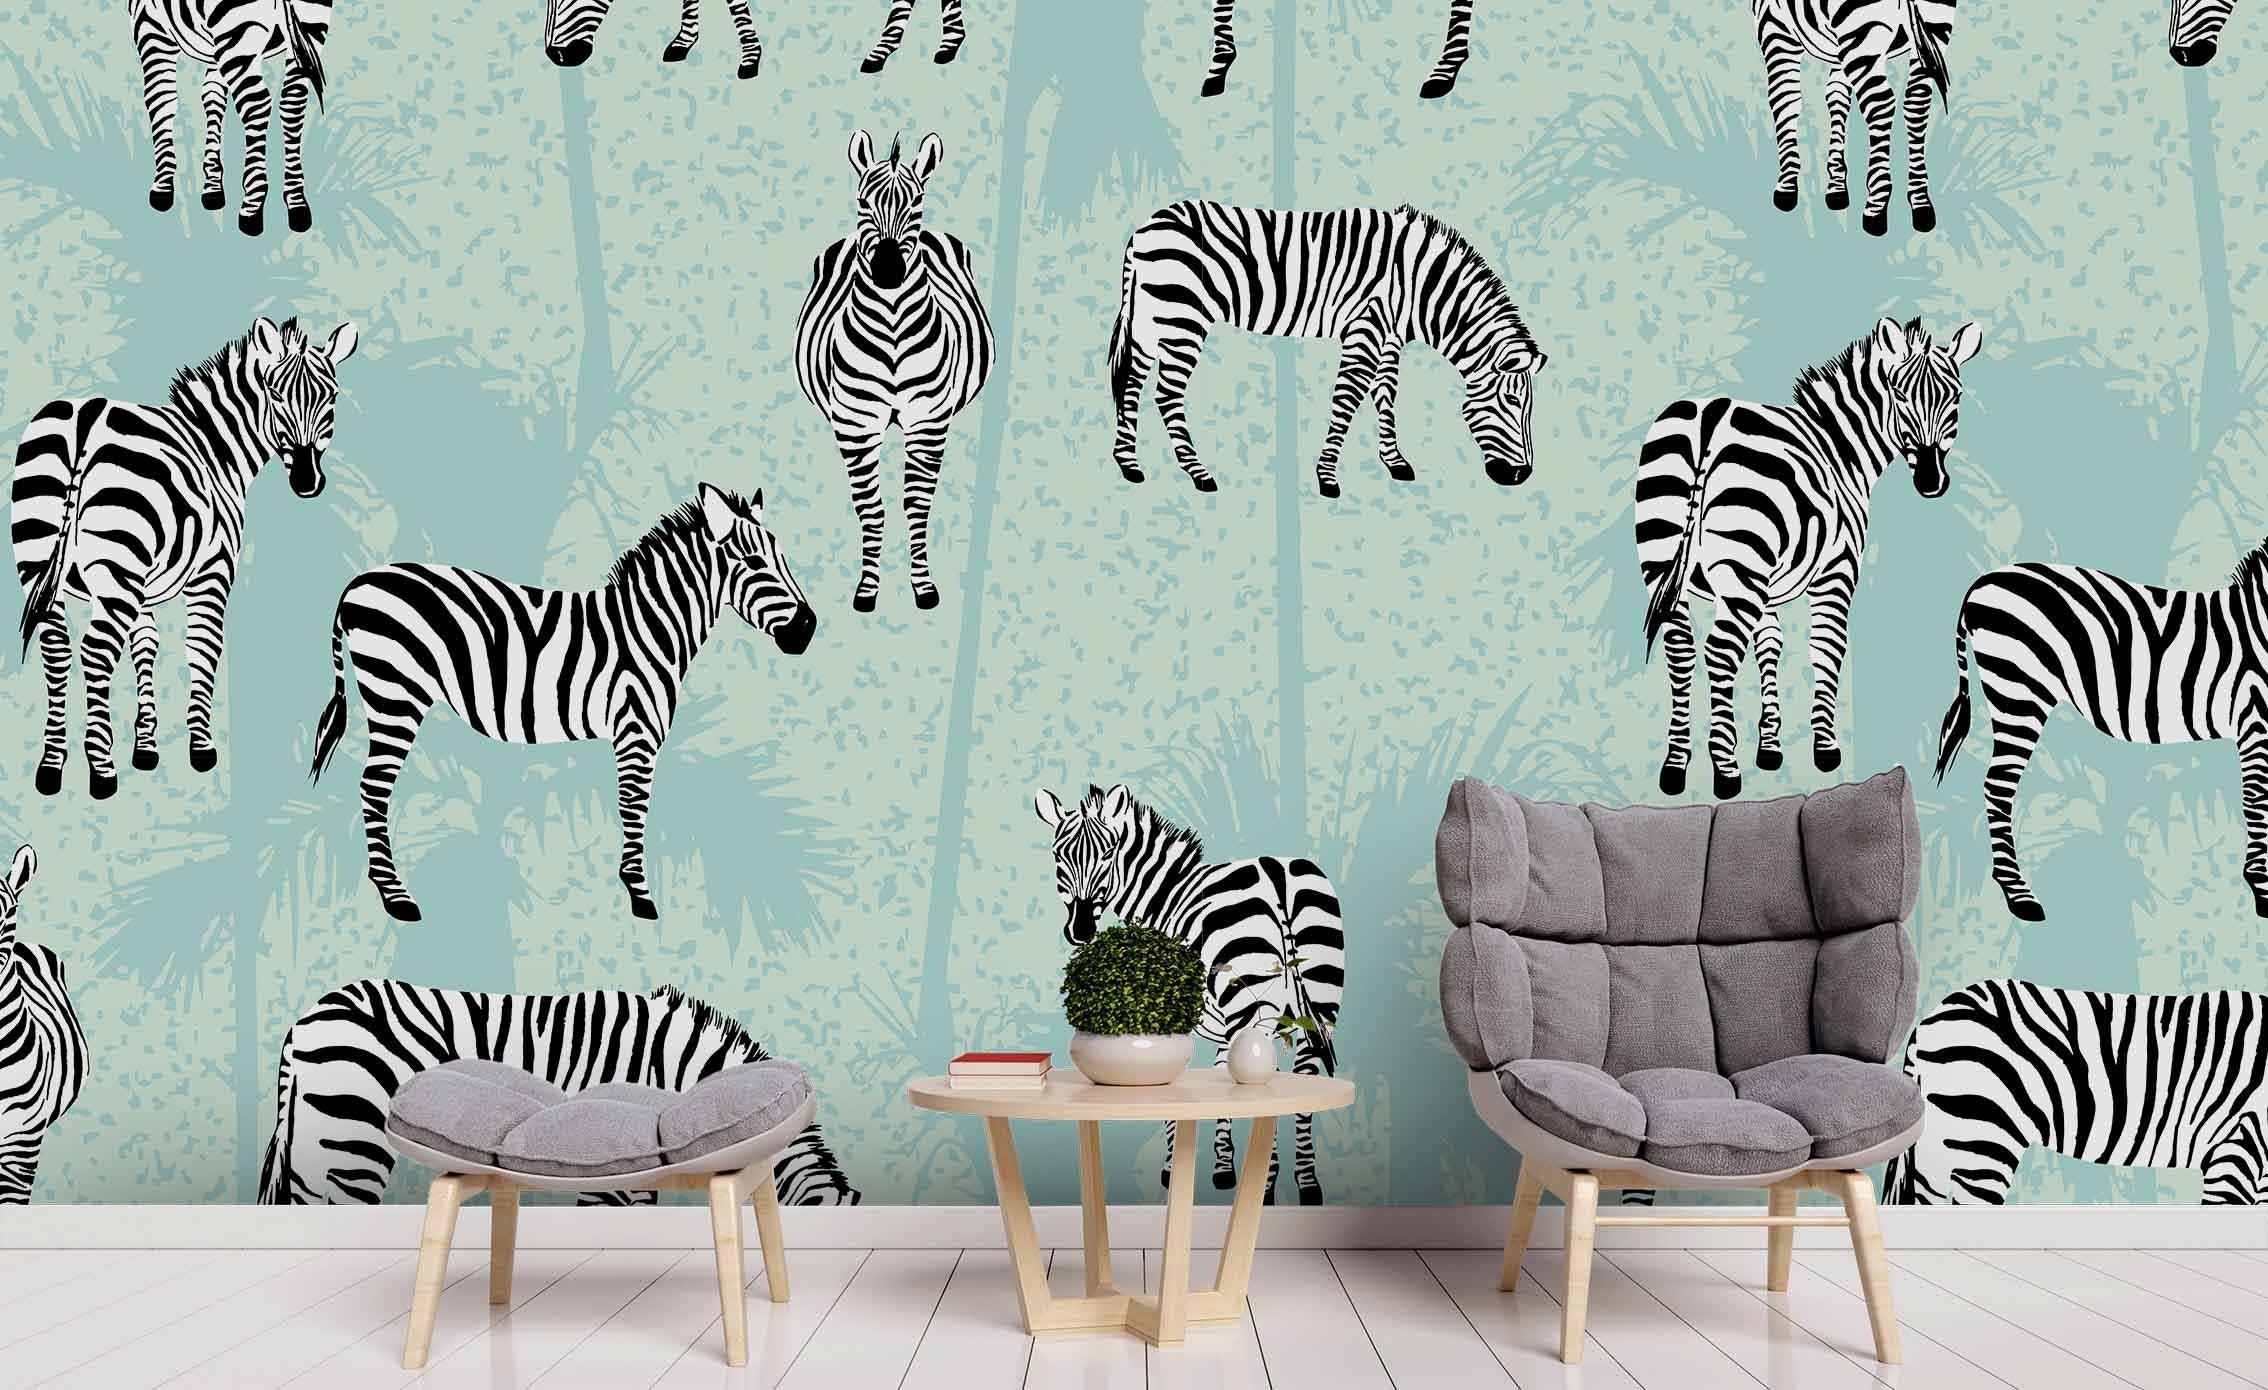 3D Zebra Coconut Tree Wall Mural Wallpaper 13 LQH- Jess Art Decoration